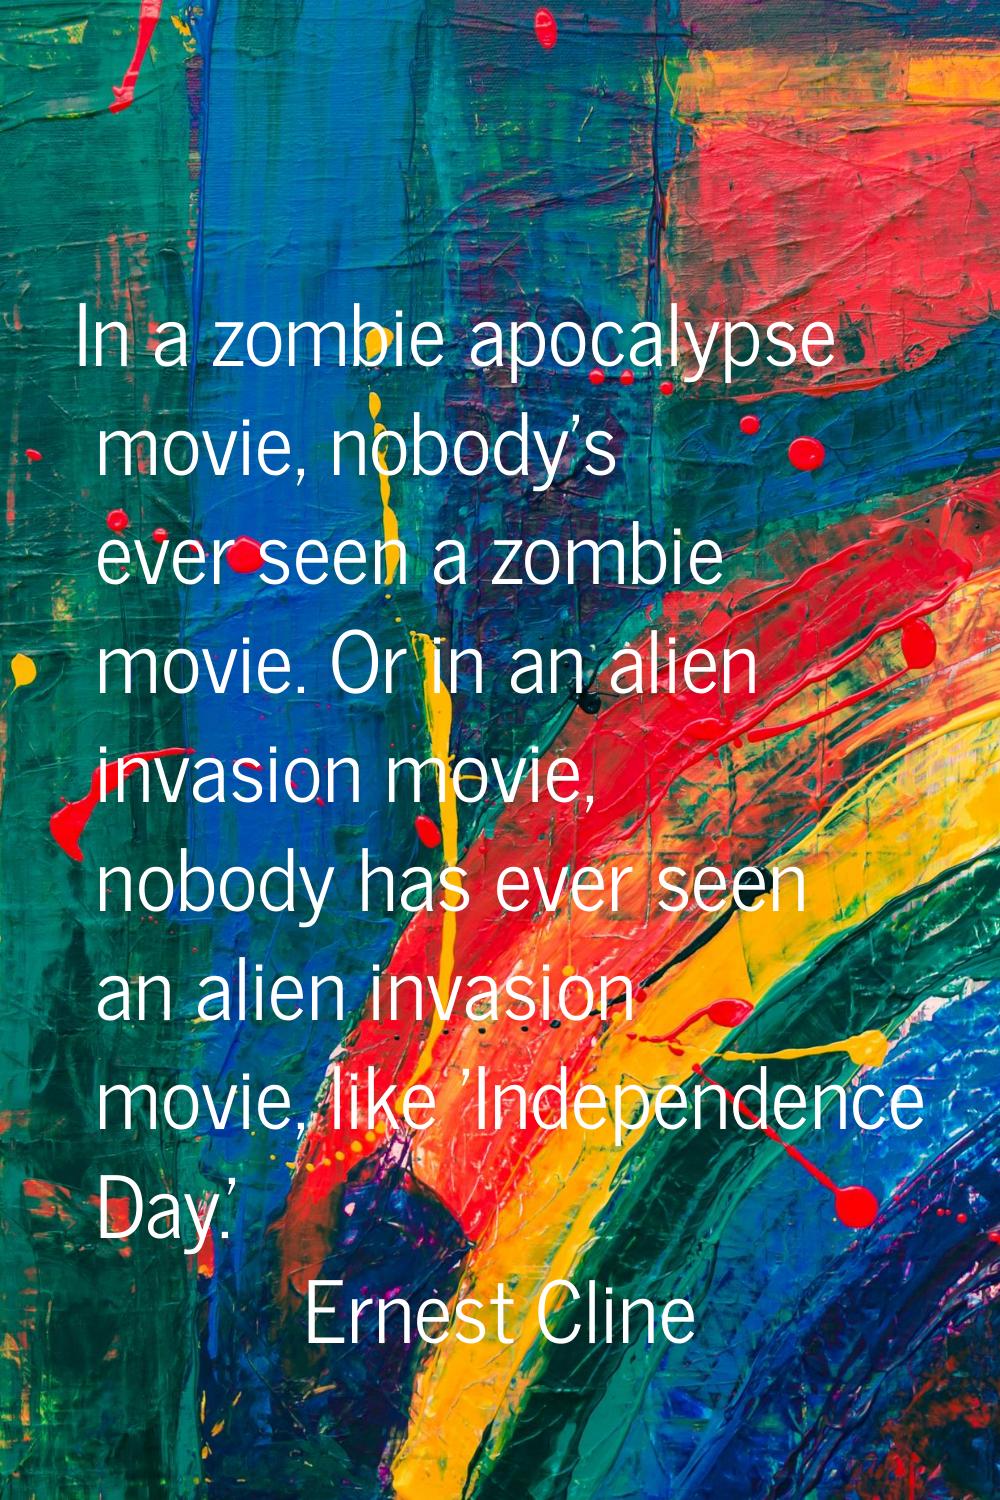 In a zombie apocalypse movie, nobody's ever seen a zombie movie. Or in an alien invasion movie, nob